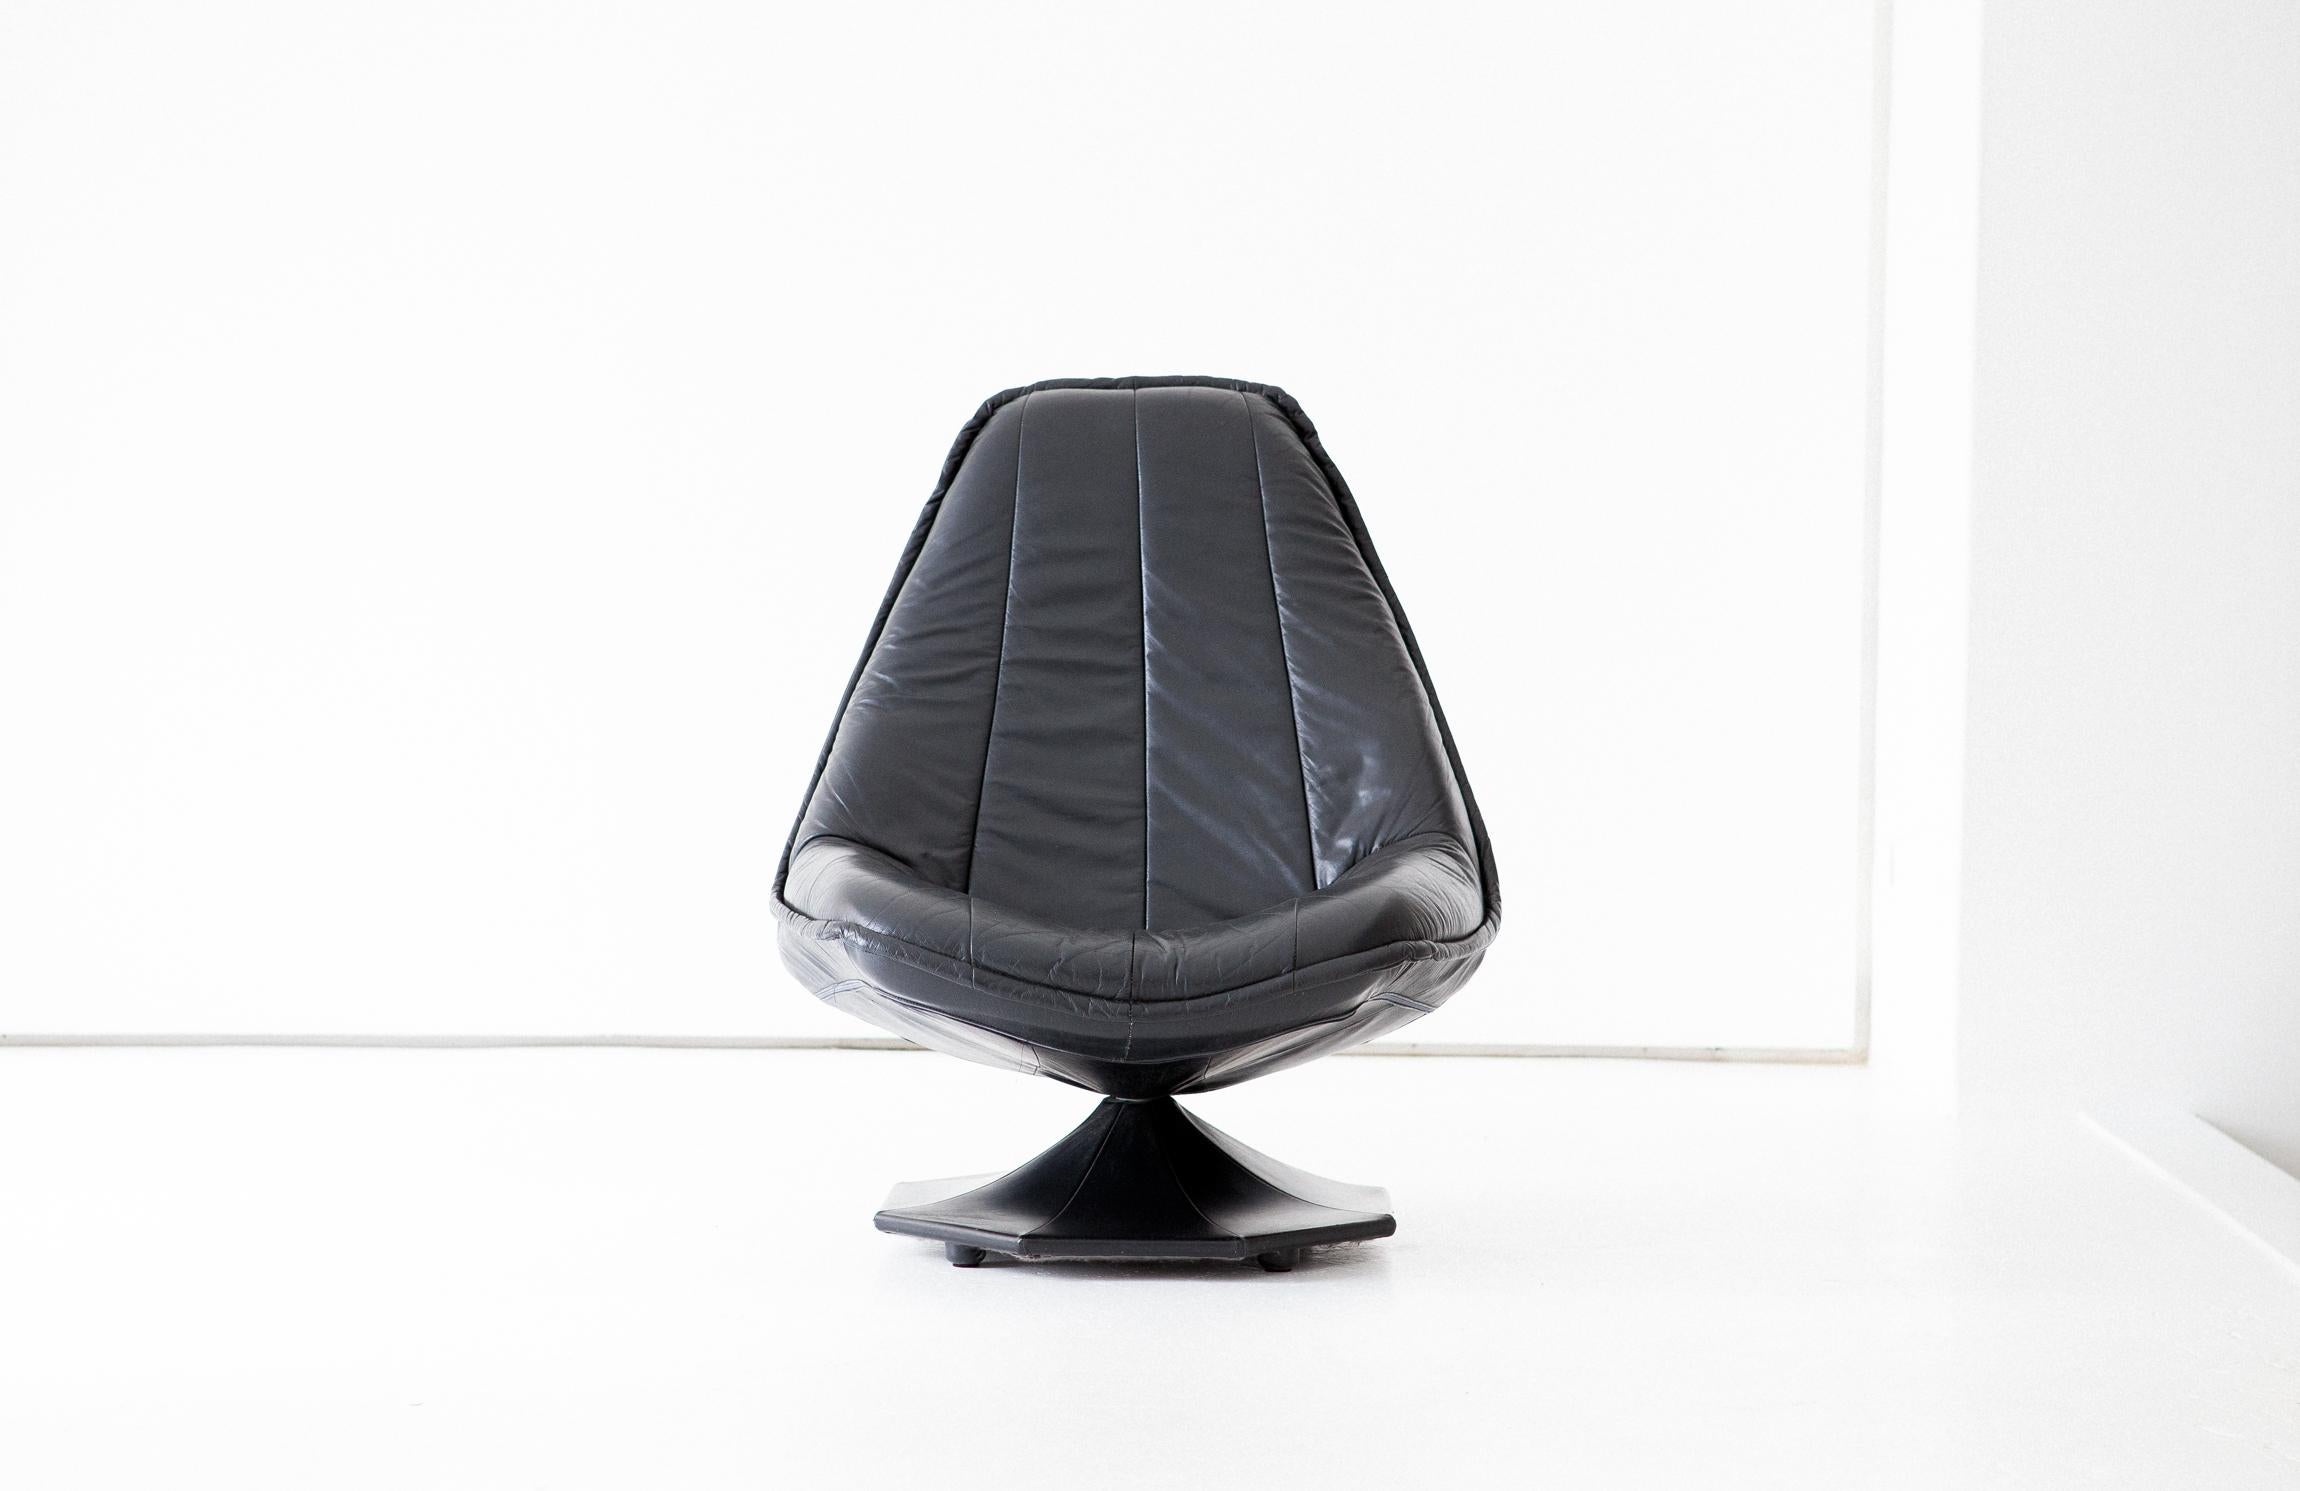 Drehbarer Sessel mit hoher Rückenlehne, hergestellt in Schweden in den 1960er Jahren

Originaler schwarzer Naturlederbezug in sehr gutem Zustand, nur kleine und angenehme Alterungsspuren sind vorhanden.



